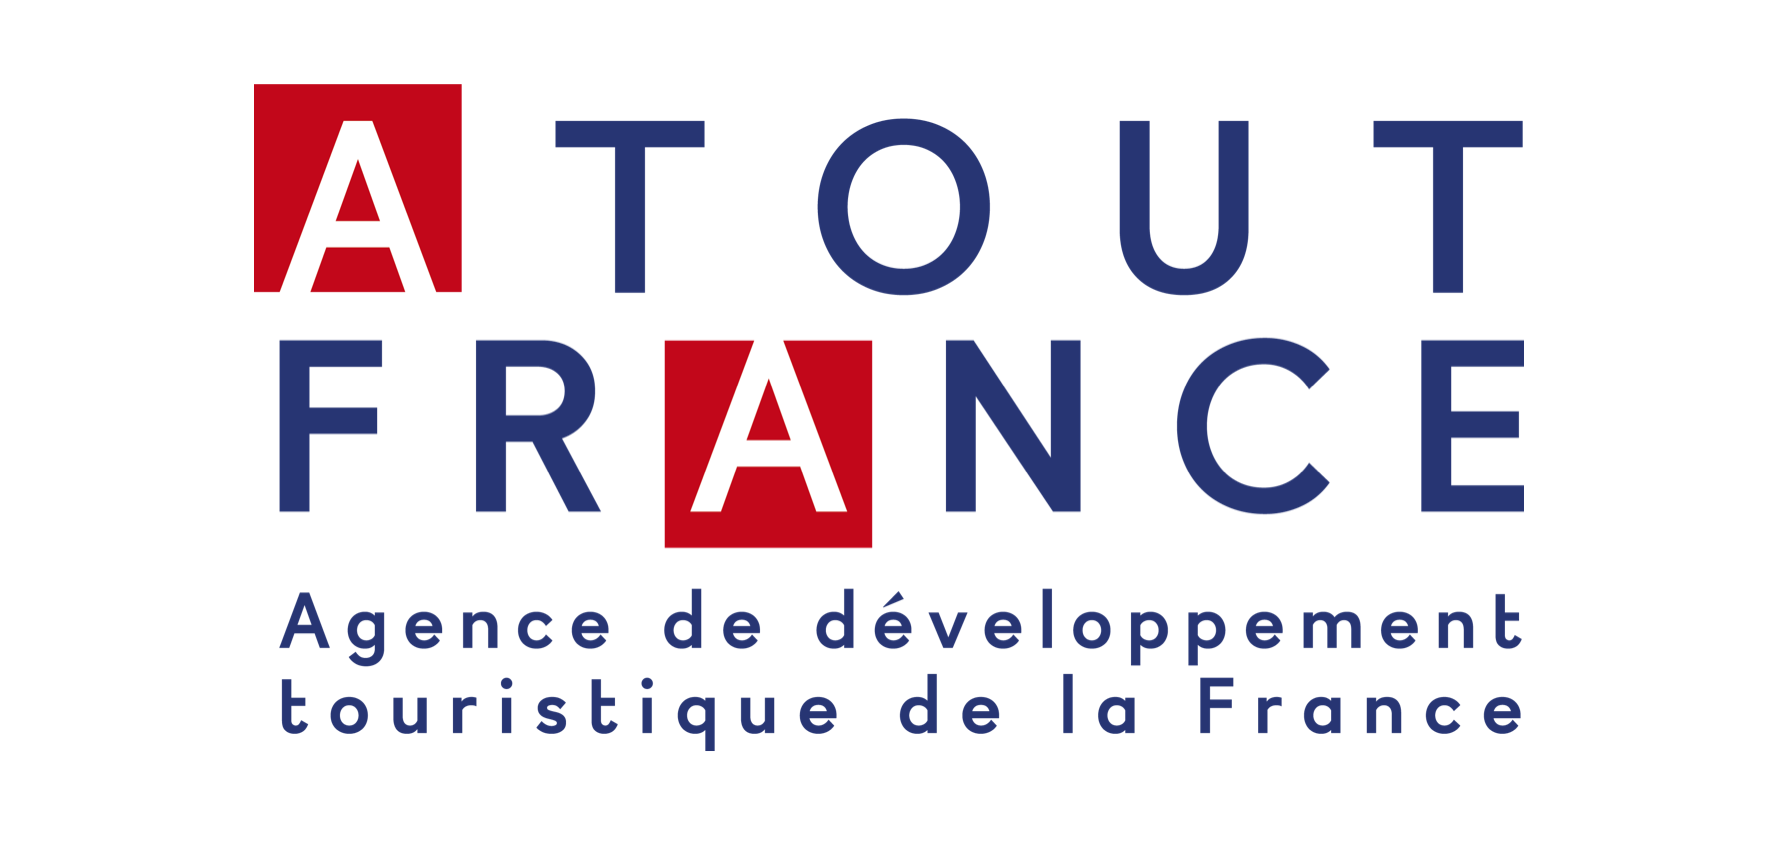 Atout France logo